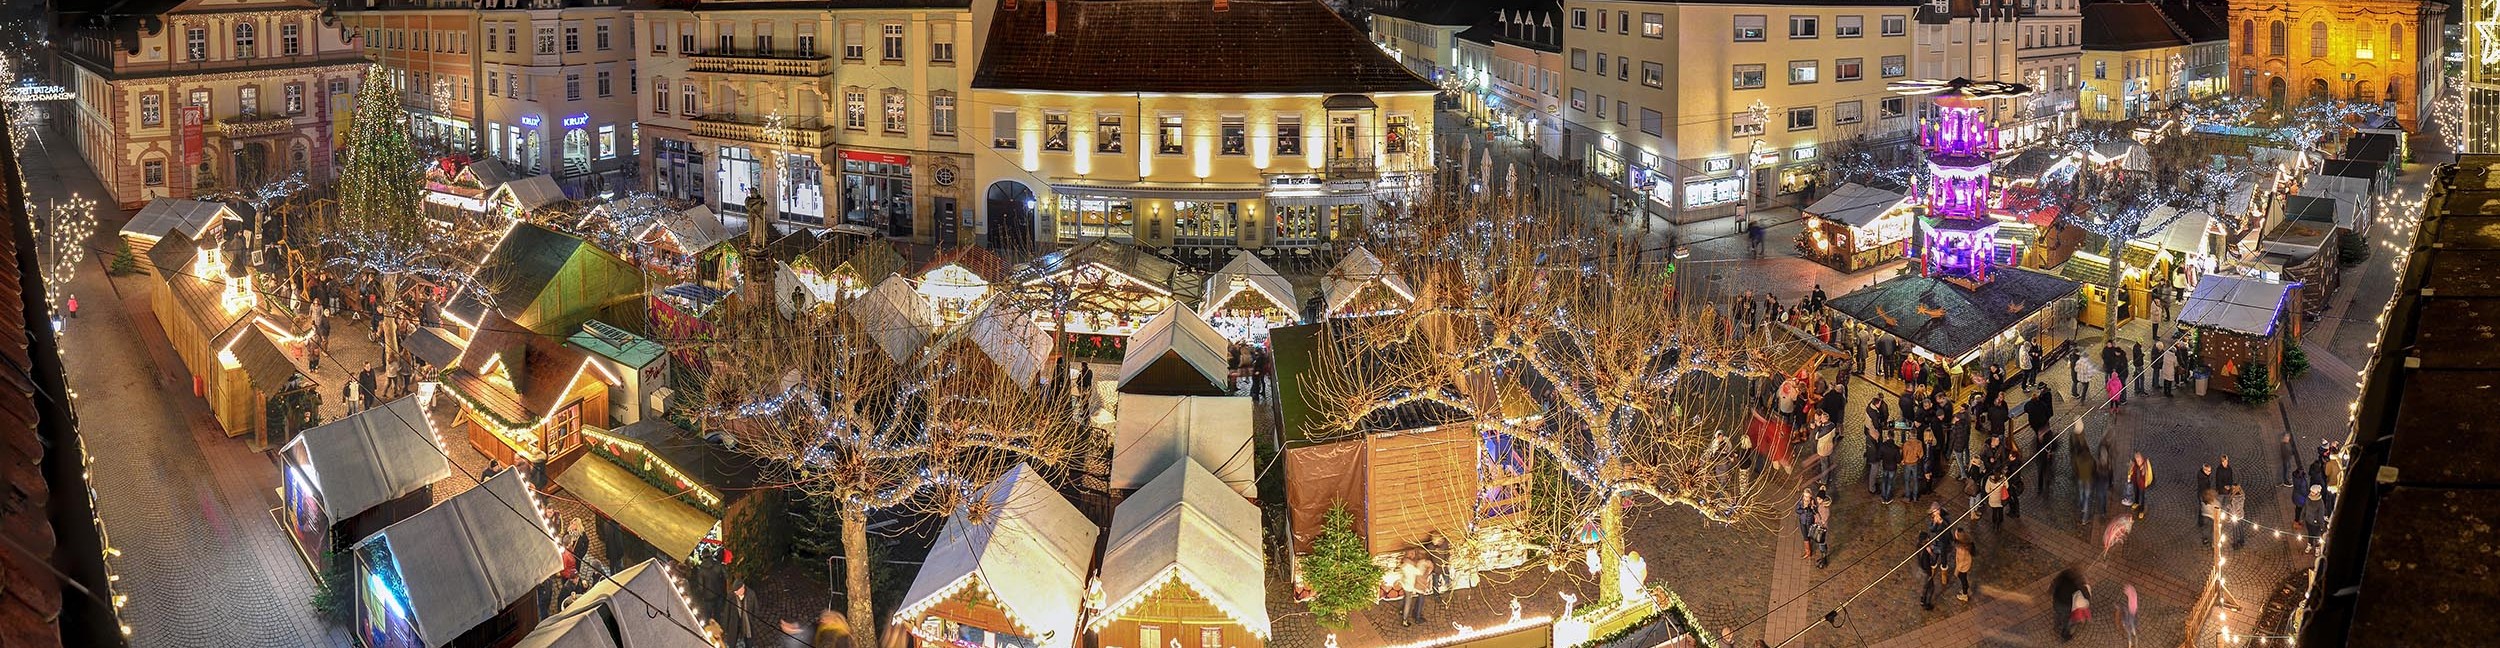 Luftbild Weihnachtsmarkt in Rastatt